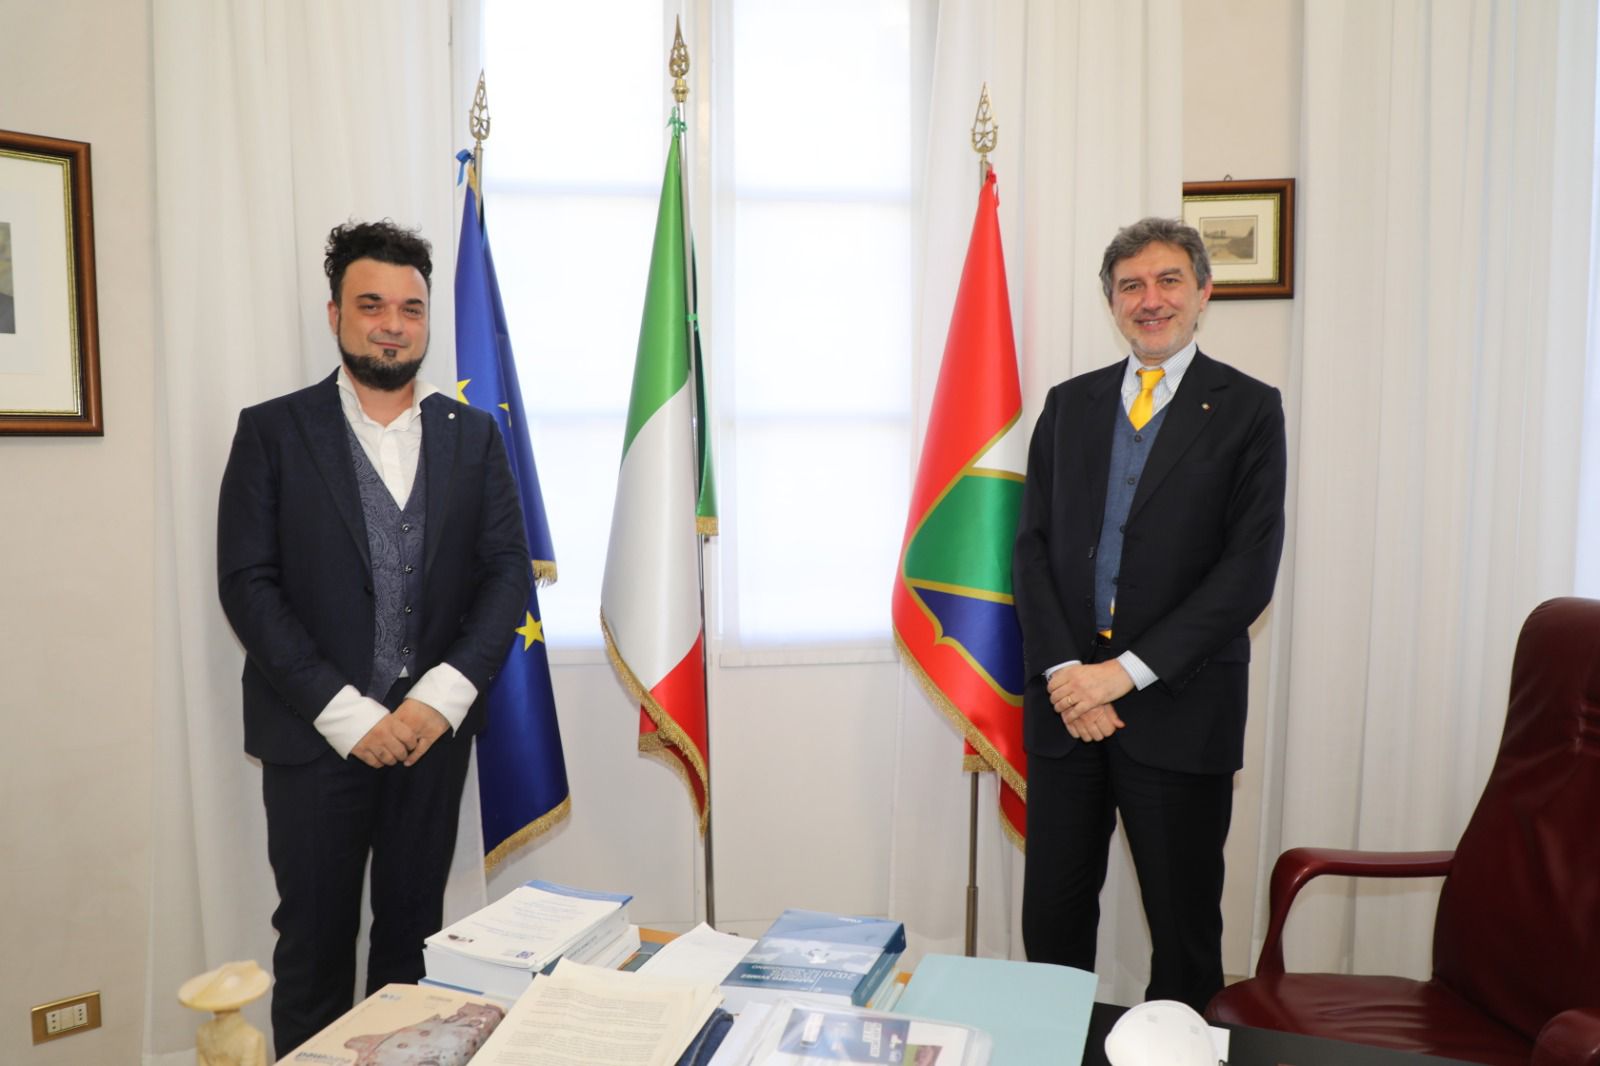 Il presidente Marsilio ha incontrato Melozzi. “Si possono creare progetti di musica classica anche in Abruzzo”